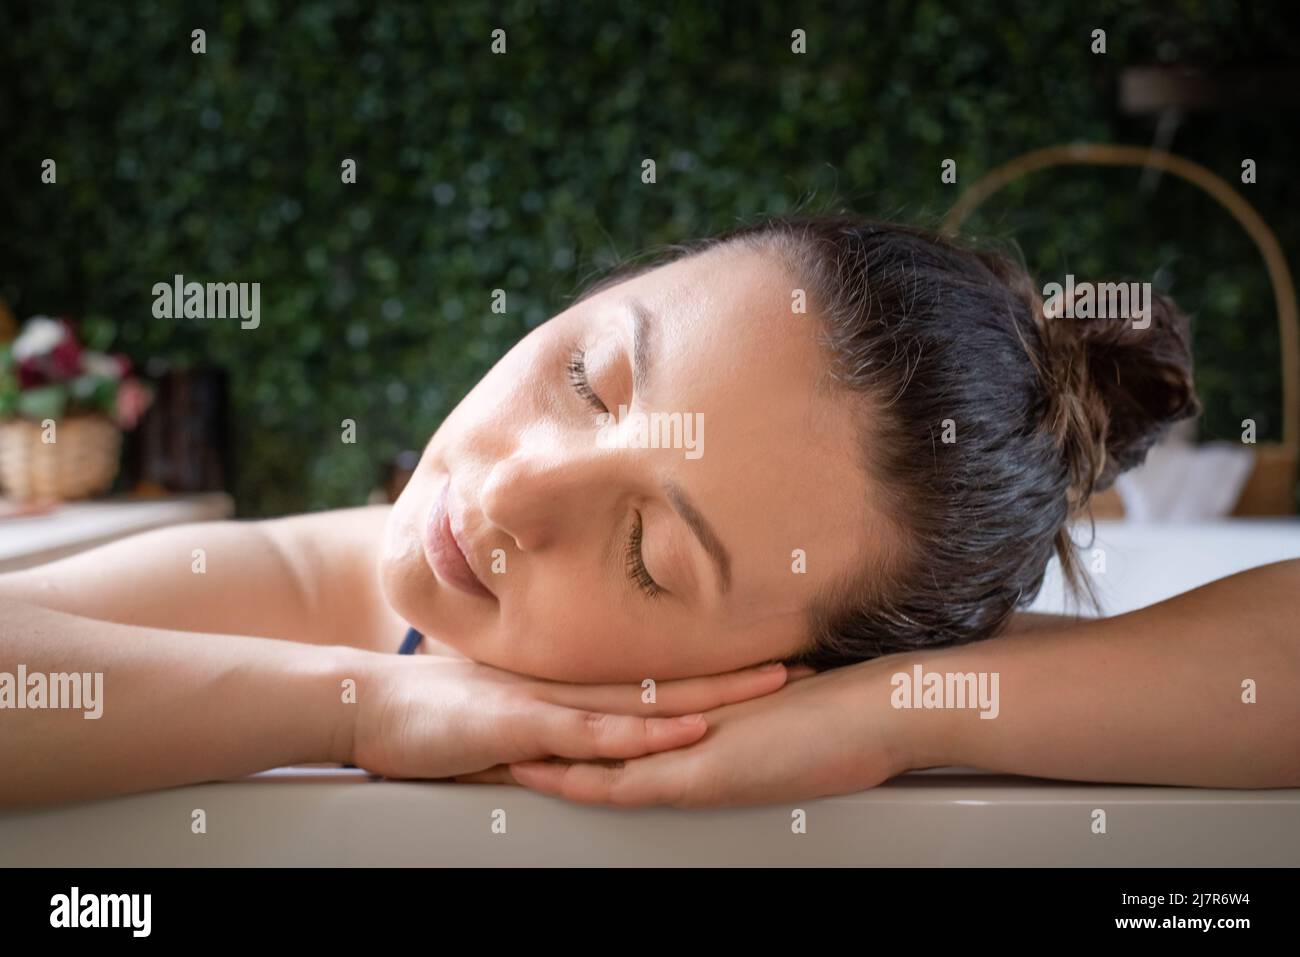 Rilassato Donna riposo testa nelle mani in vasca idromassaggio Foto Stock